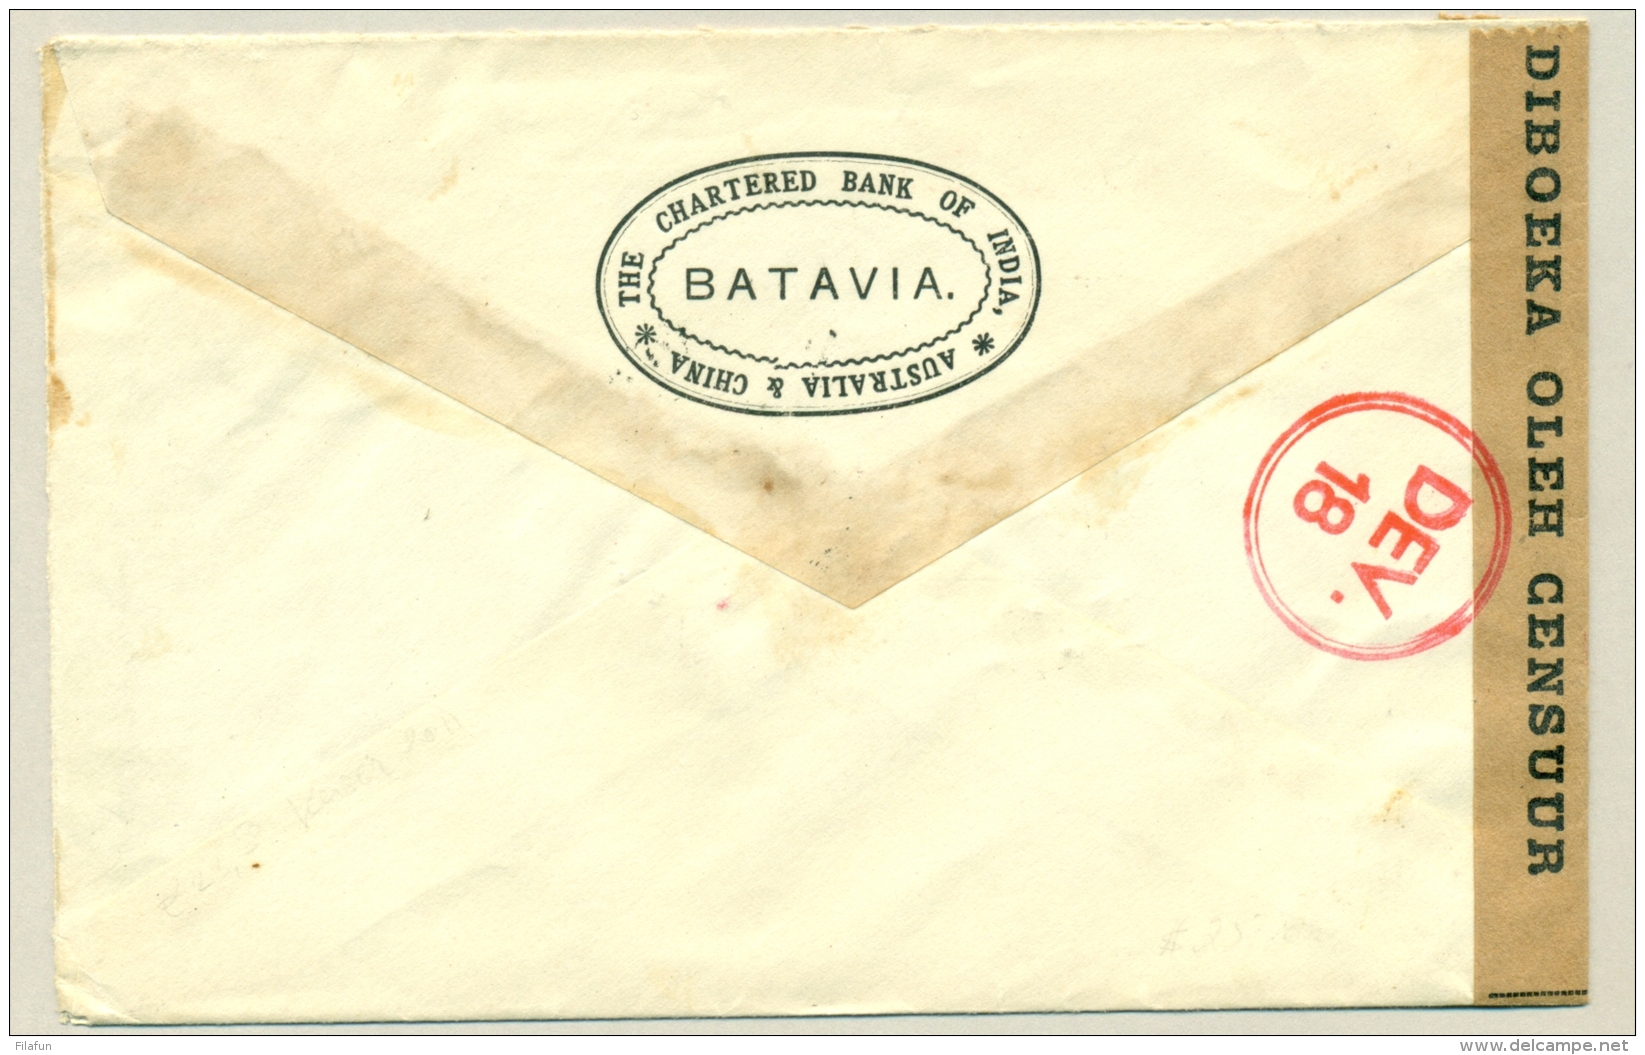 Nederlands Indië - 1941 -15 Cent Konijnenburg Op Censuurbrief Naar Chicago  / USA - Censored Cover - Niederländisch-Indien